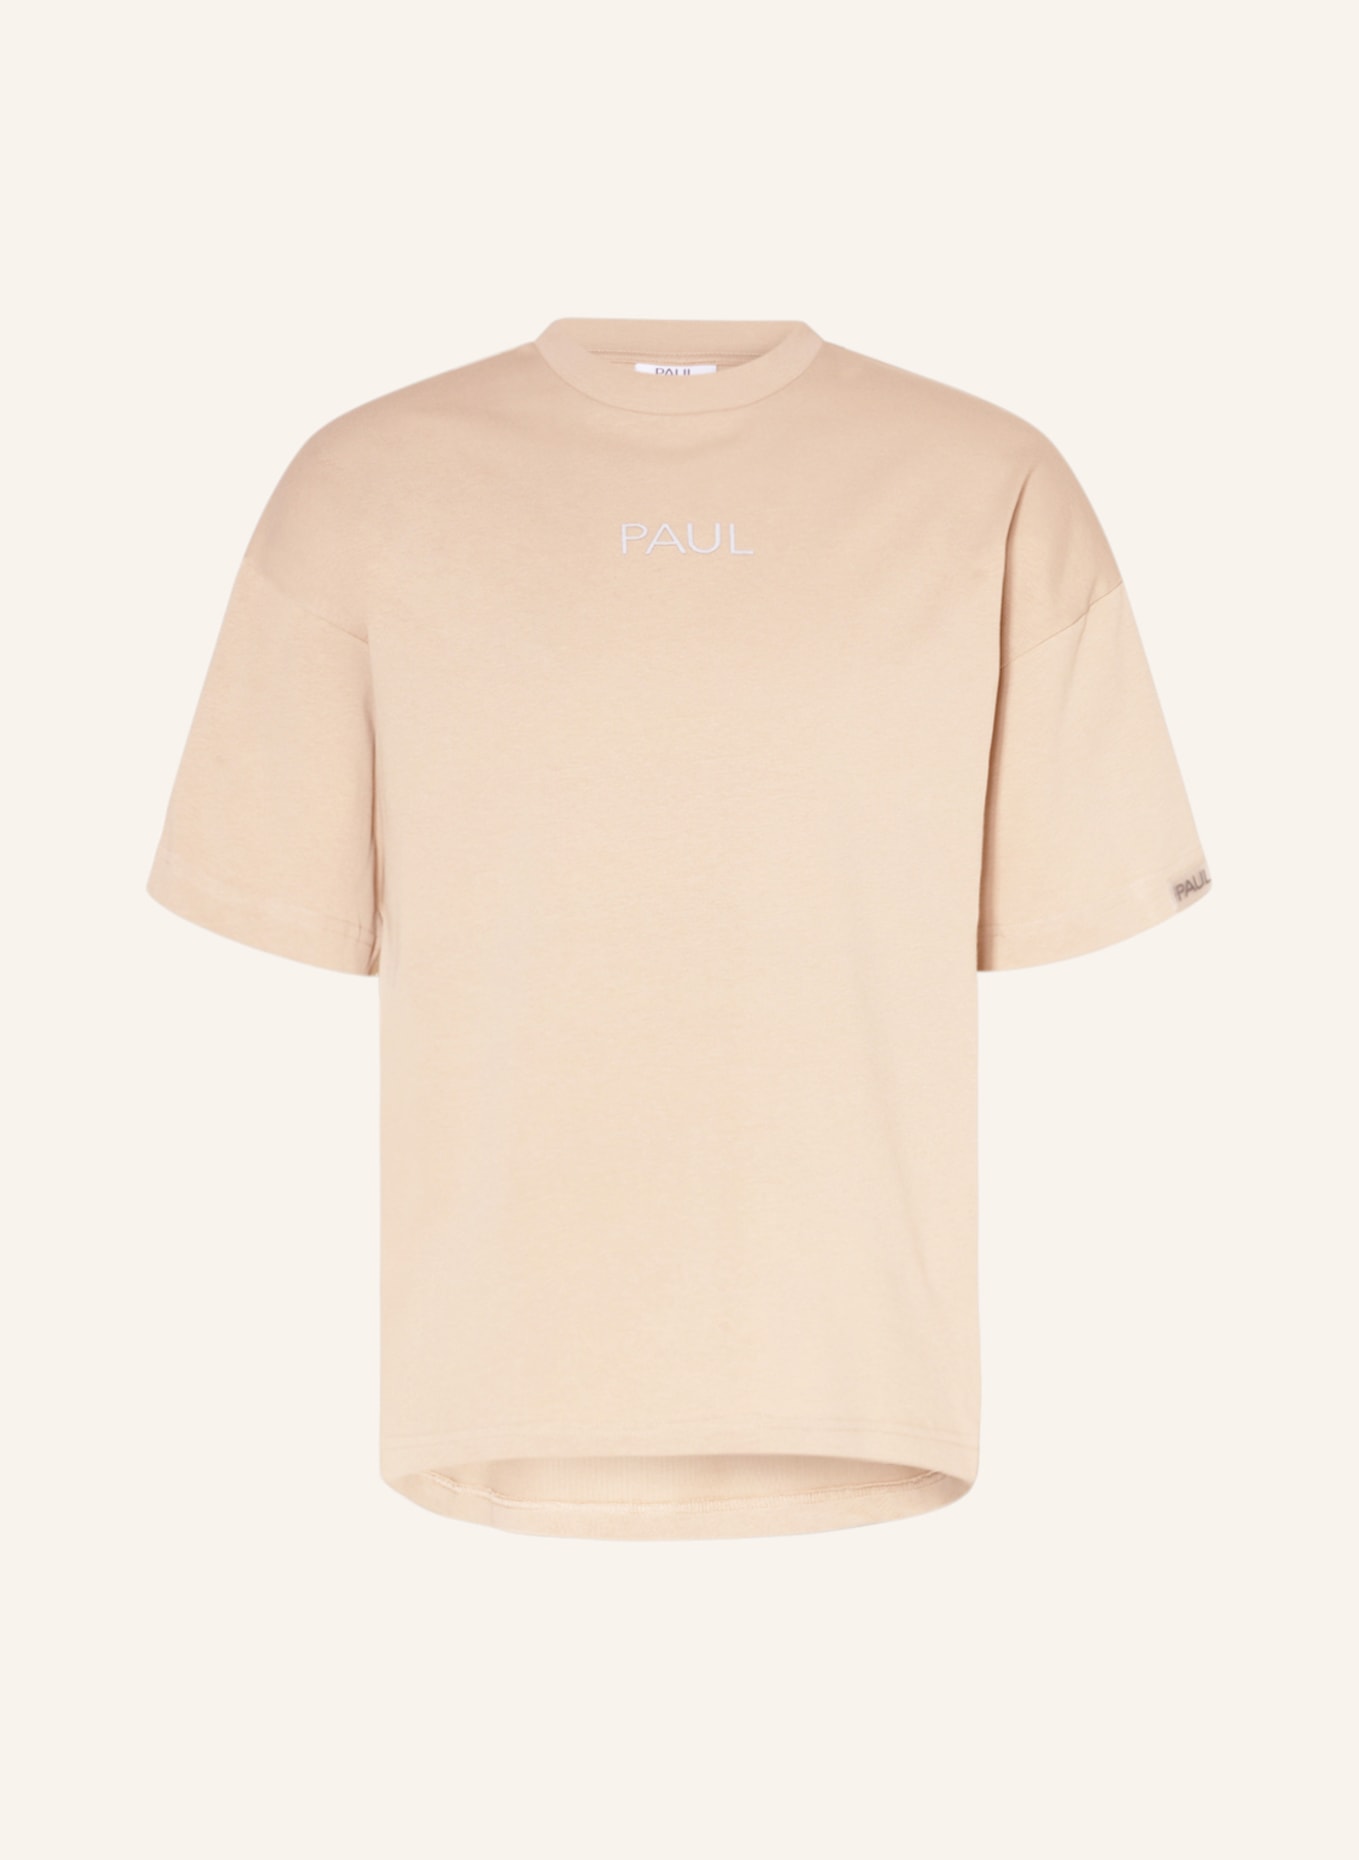 PAUL T-shirt, Color: BEIGE (Image 1)